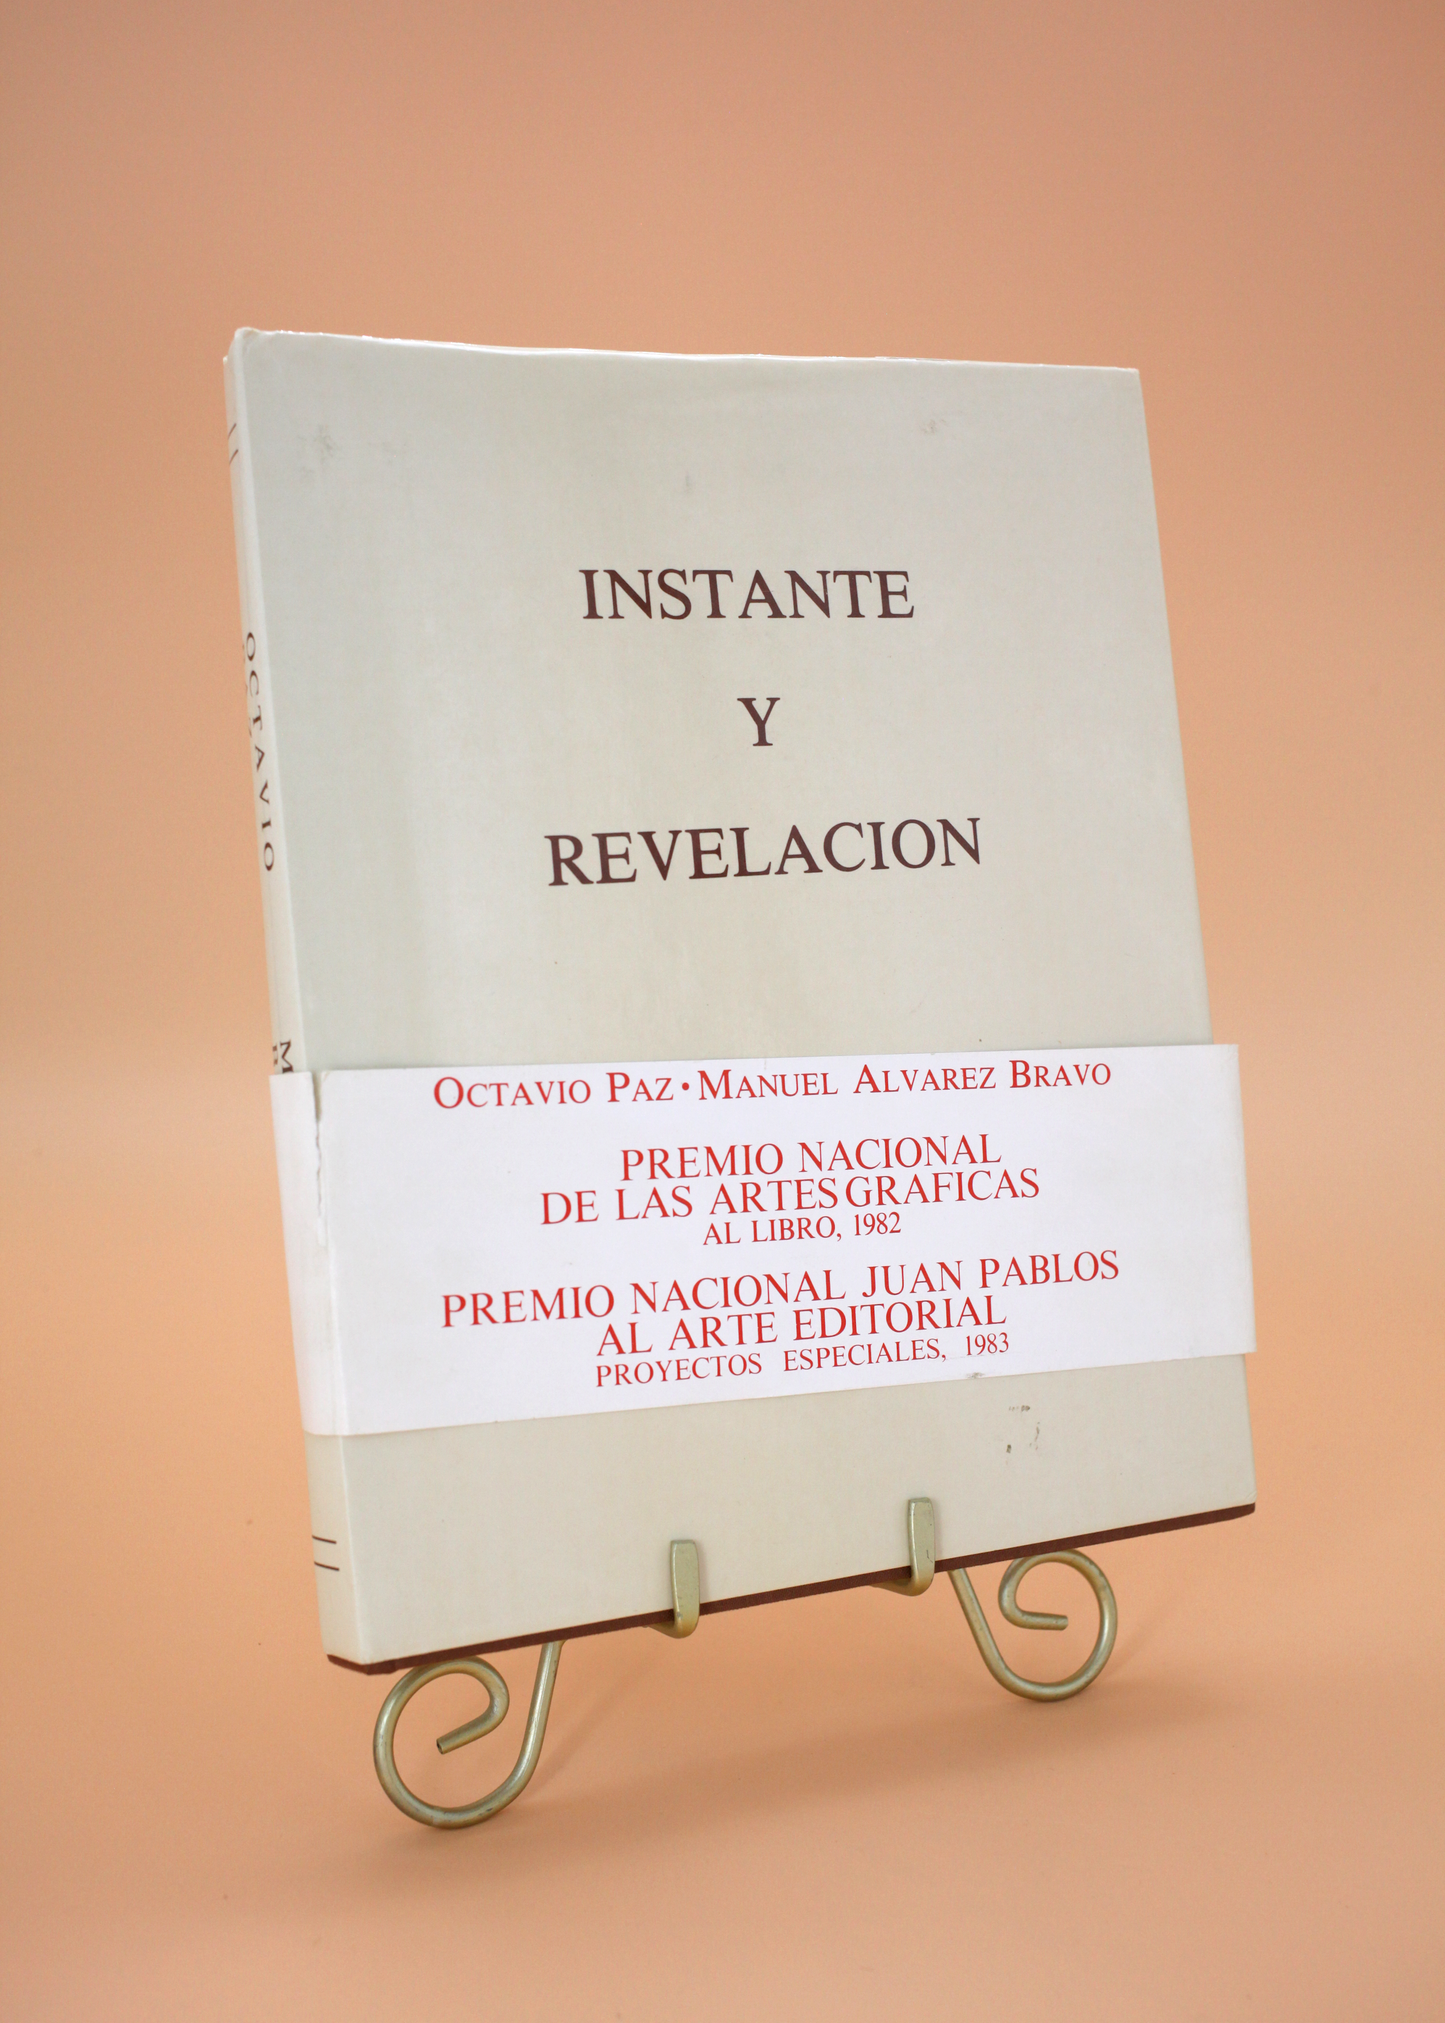 Signed Octavio Paz Instante Y Revelacion